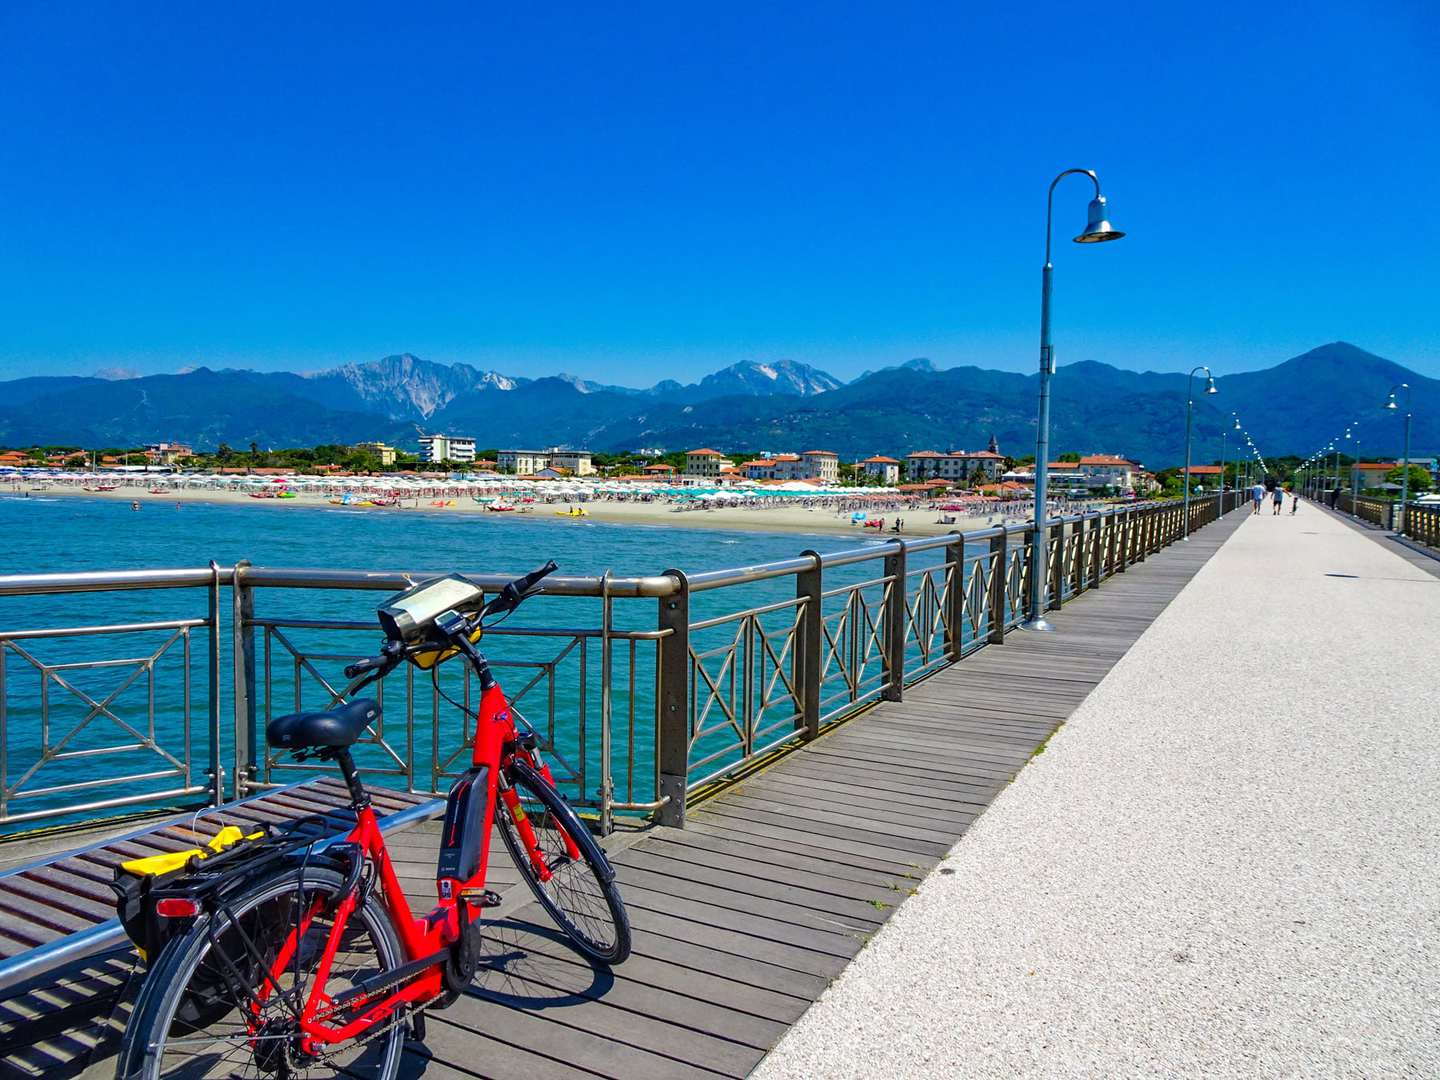 Radreise Italien Pisa Cinque Terre Fahrrad auf Strandpromenade